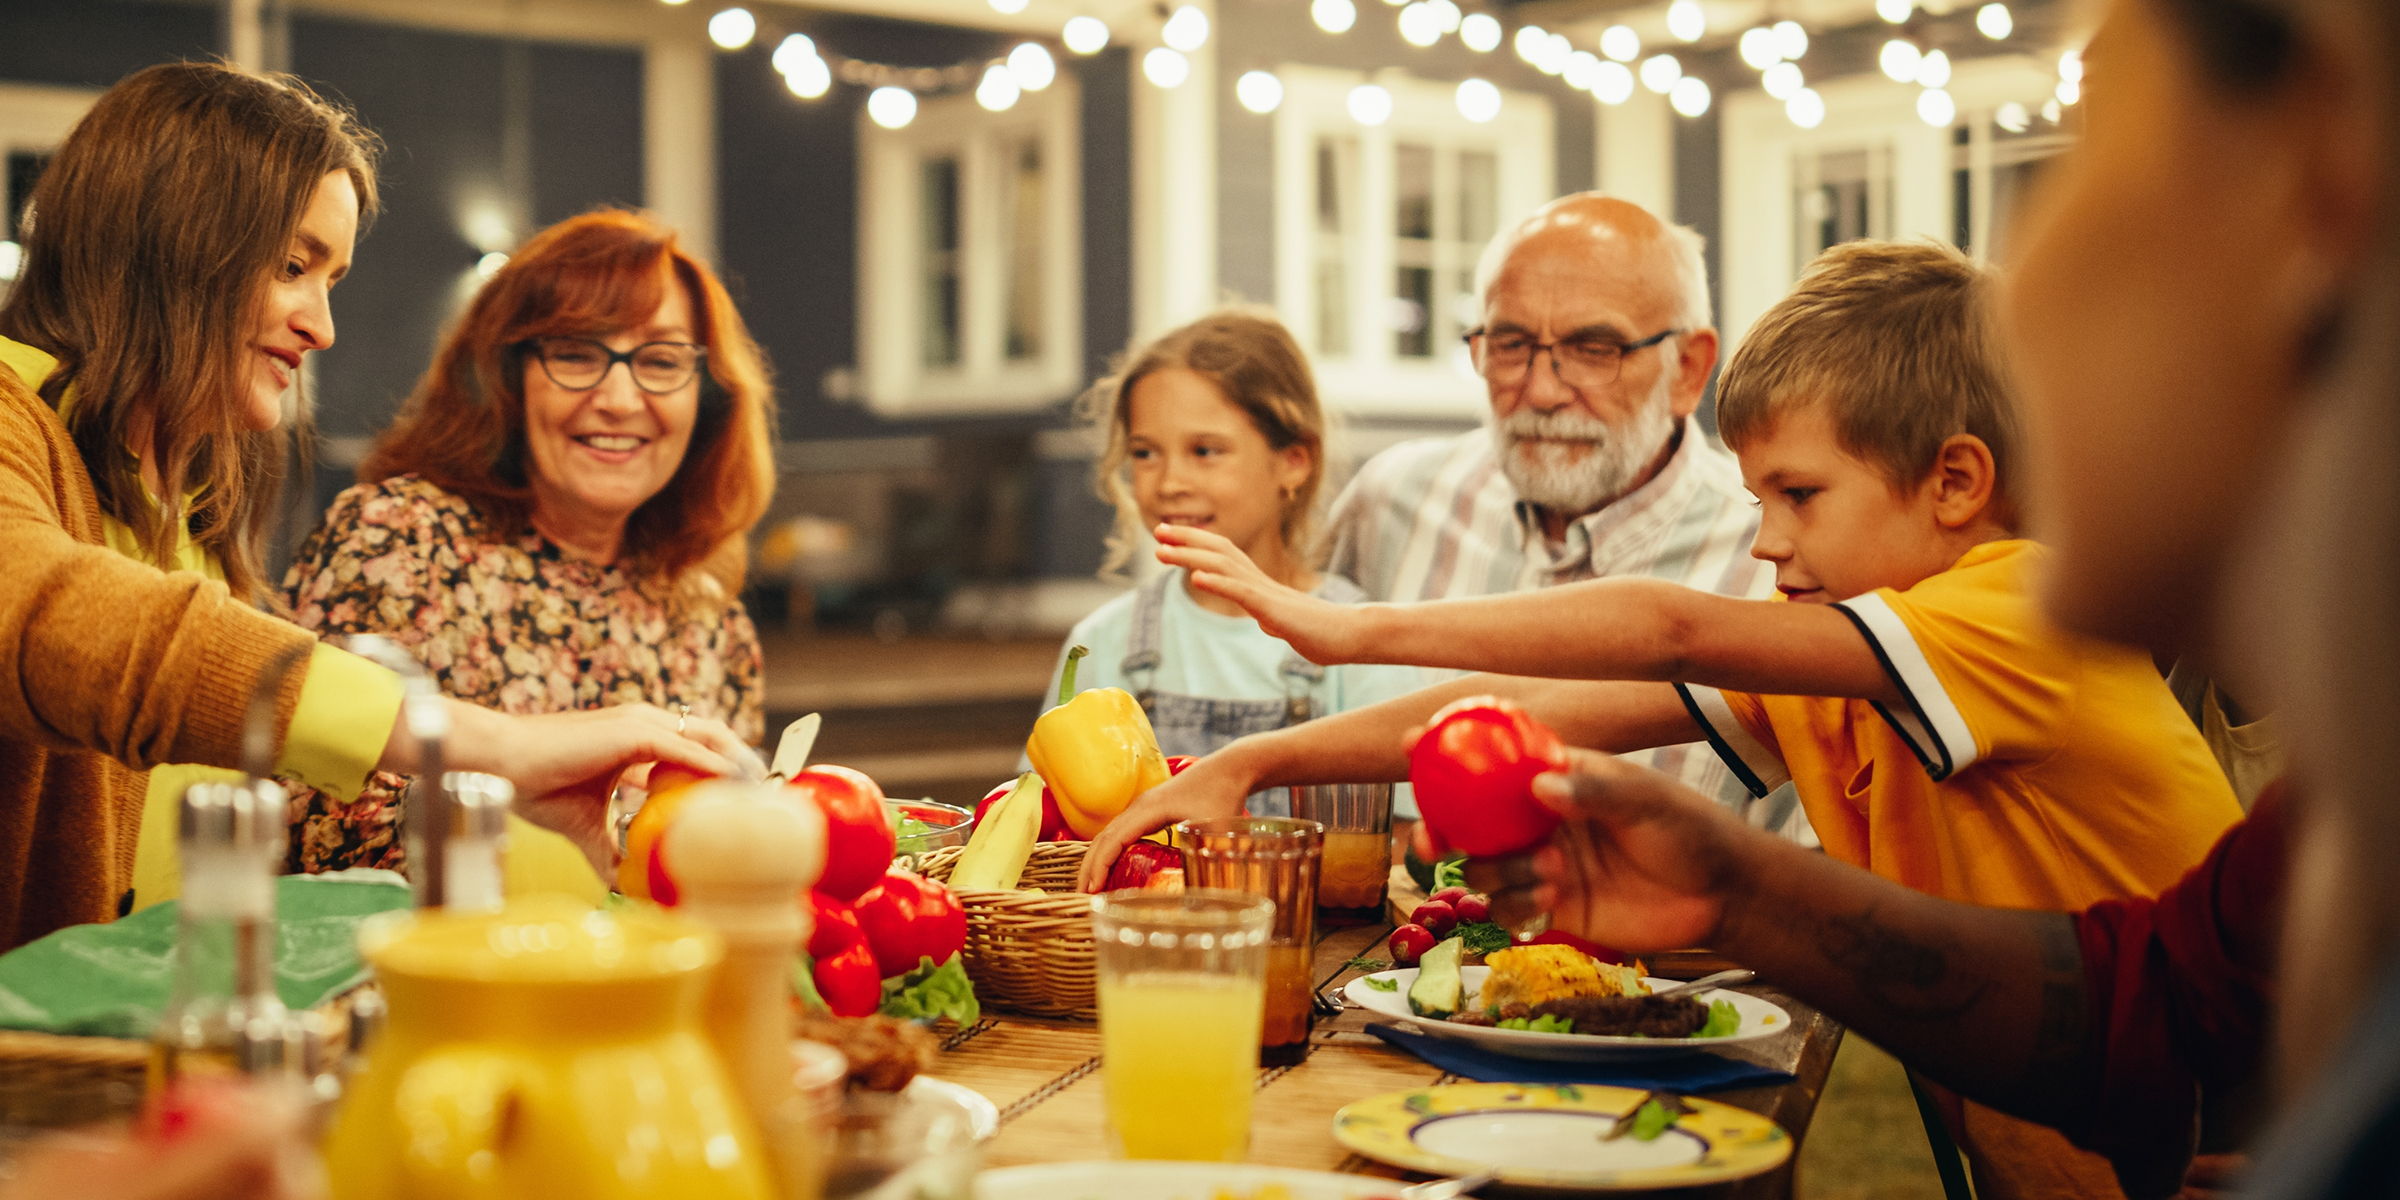 Happy family enjoying dinner | Source: Shutterstock